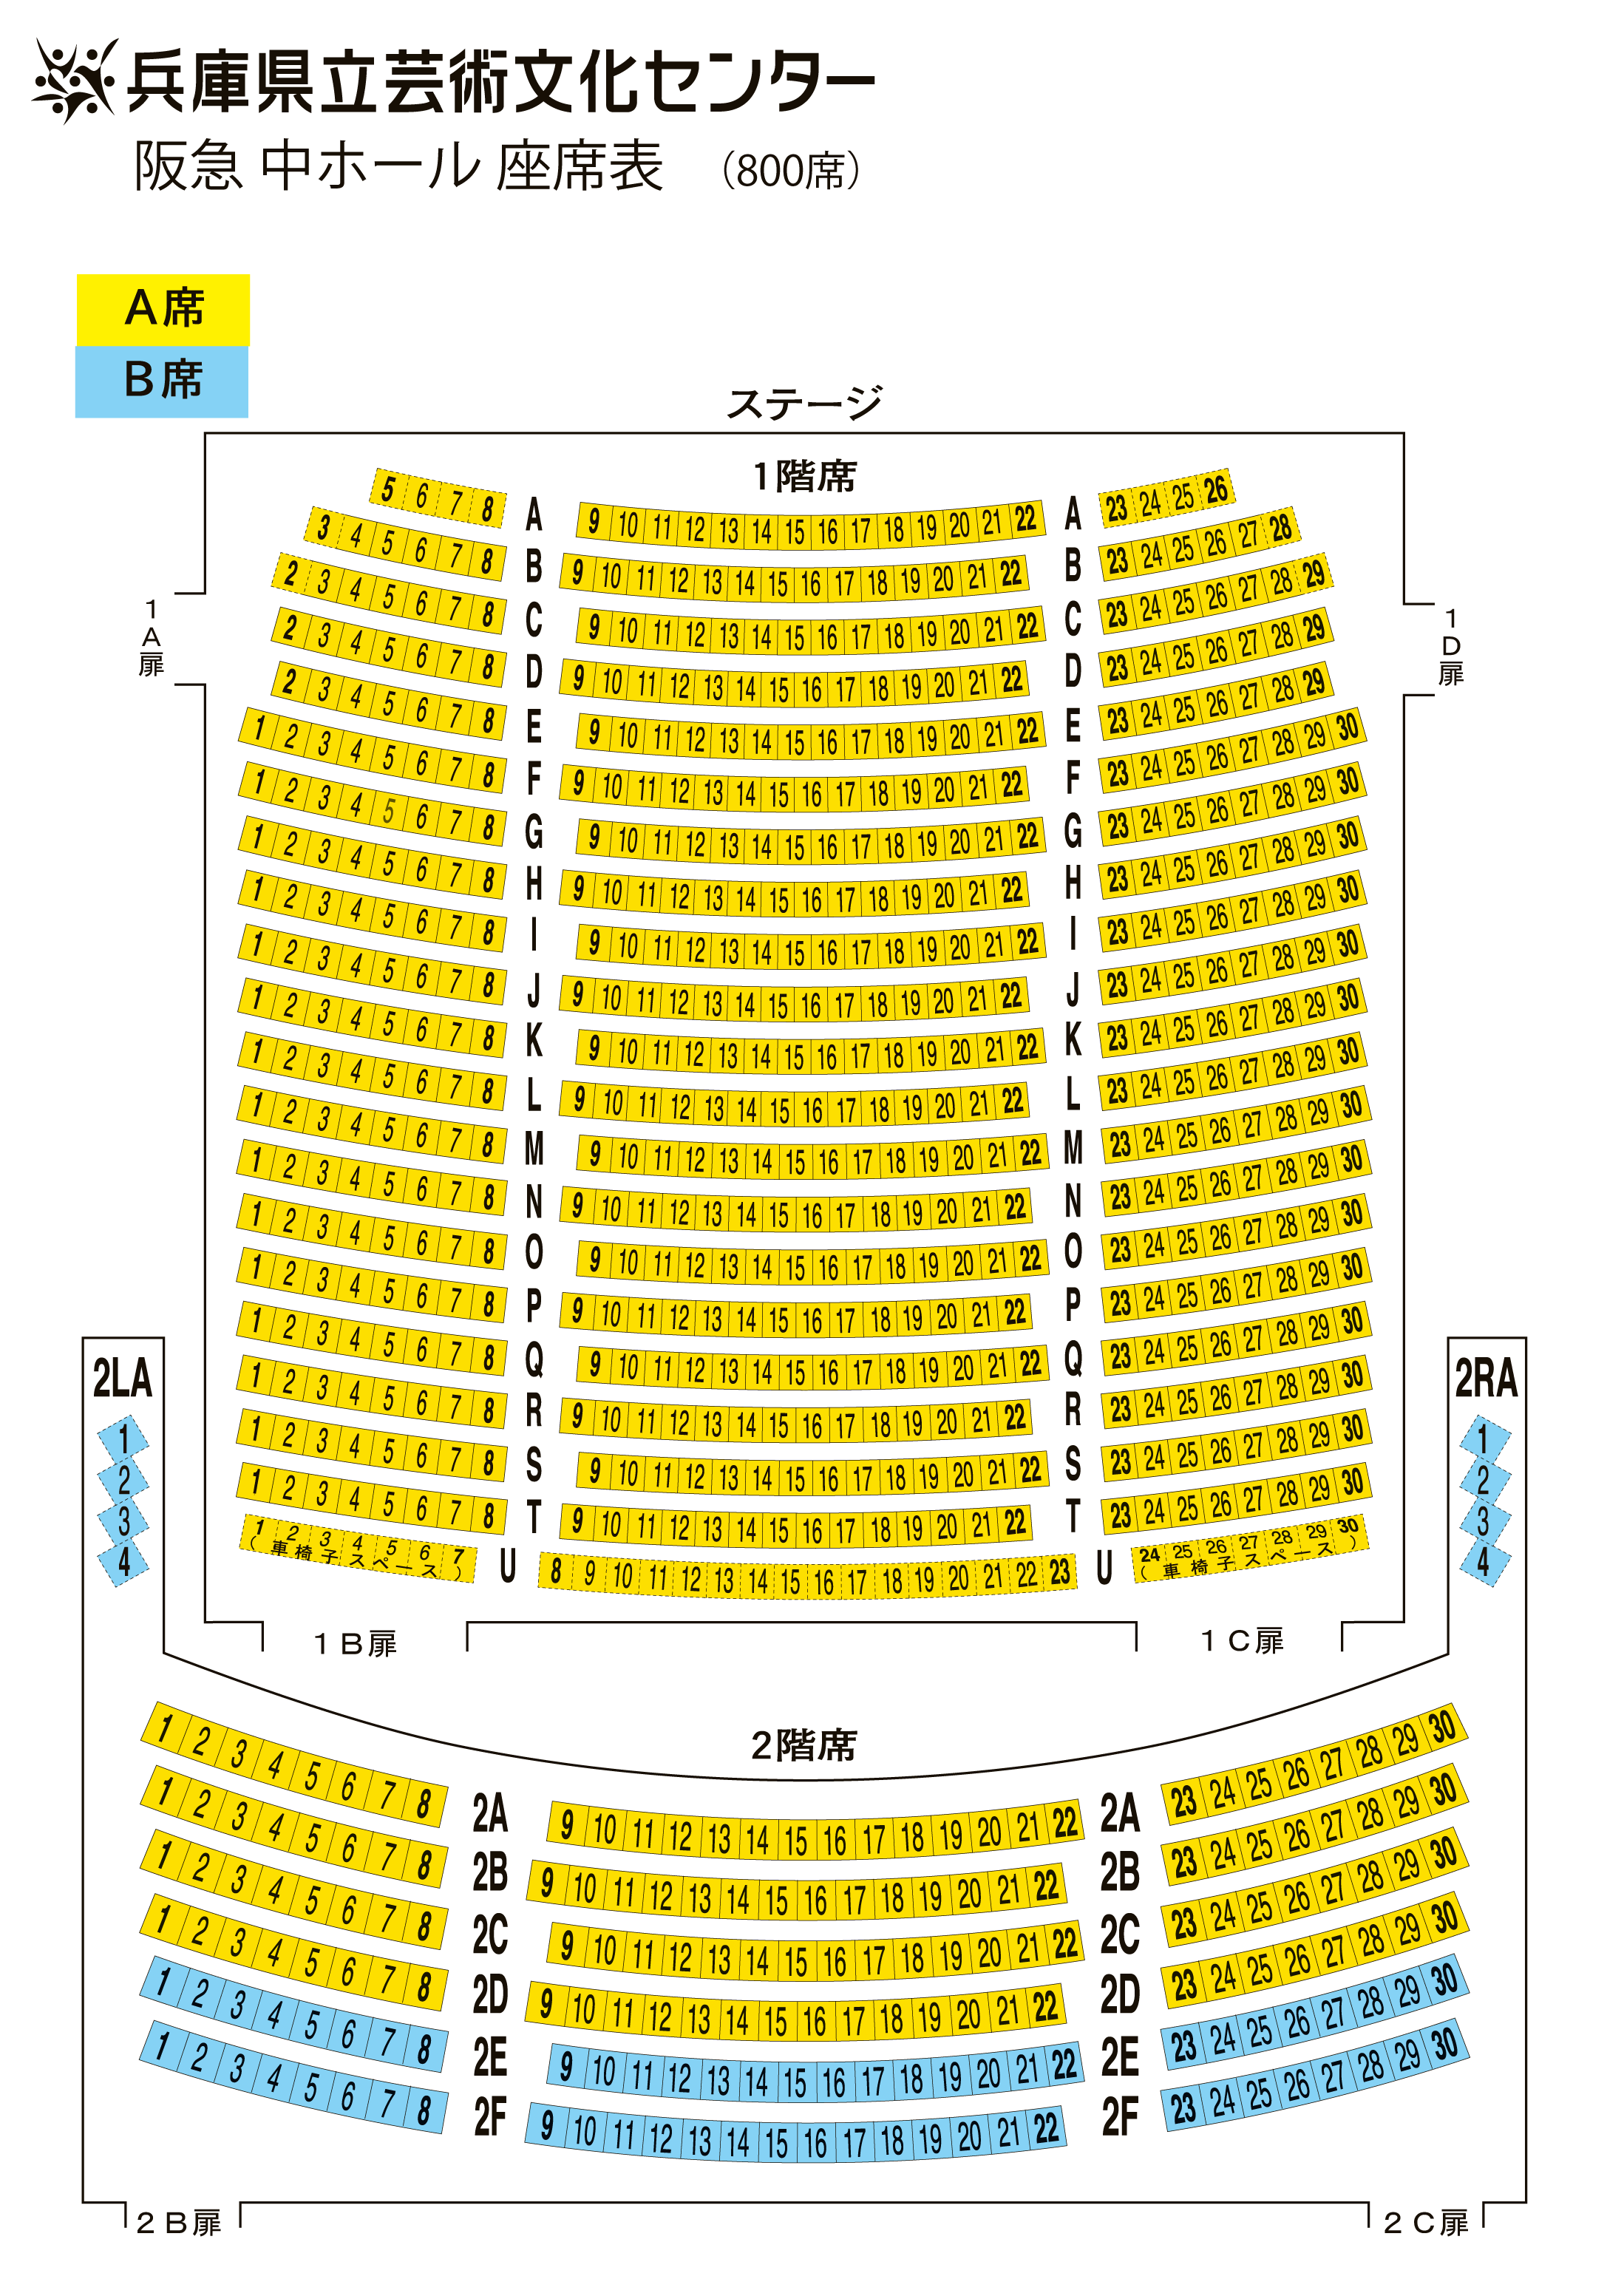 大阪 フェスティバル ホール 座席 表